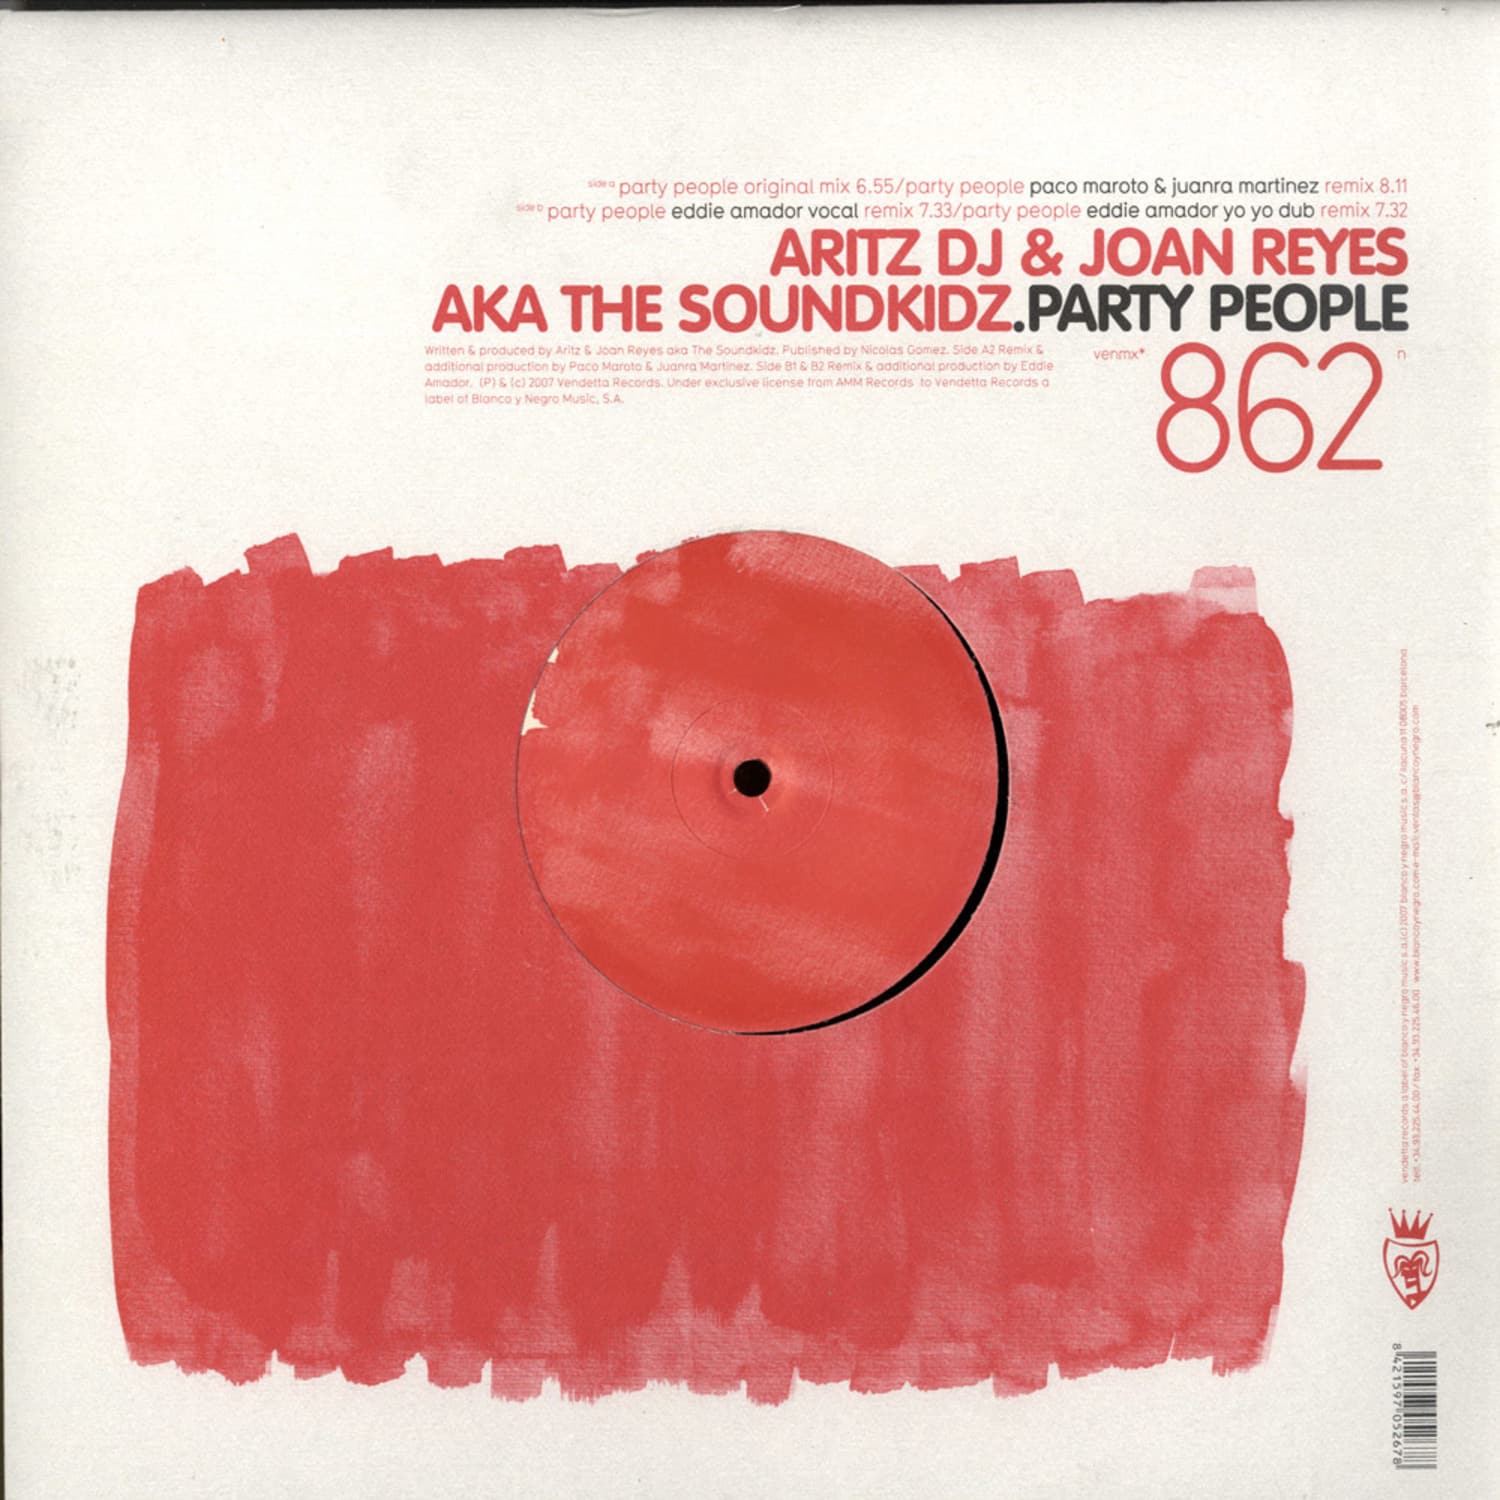 Aritz Dj & Joan Reyes aka The Soundkidz - PARTY PEOPLE